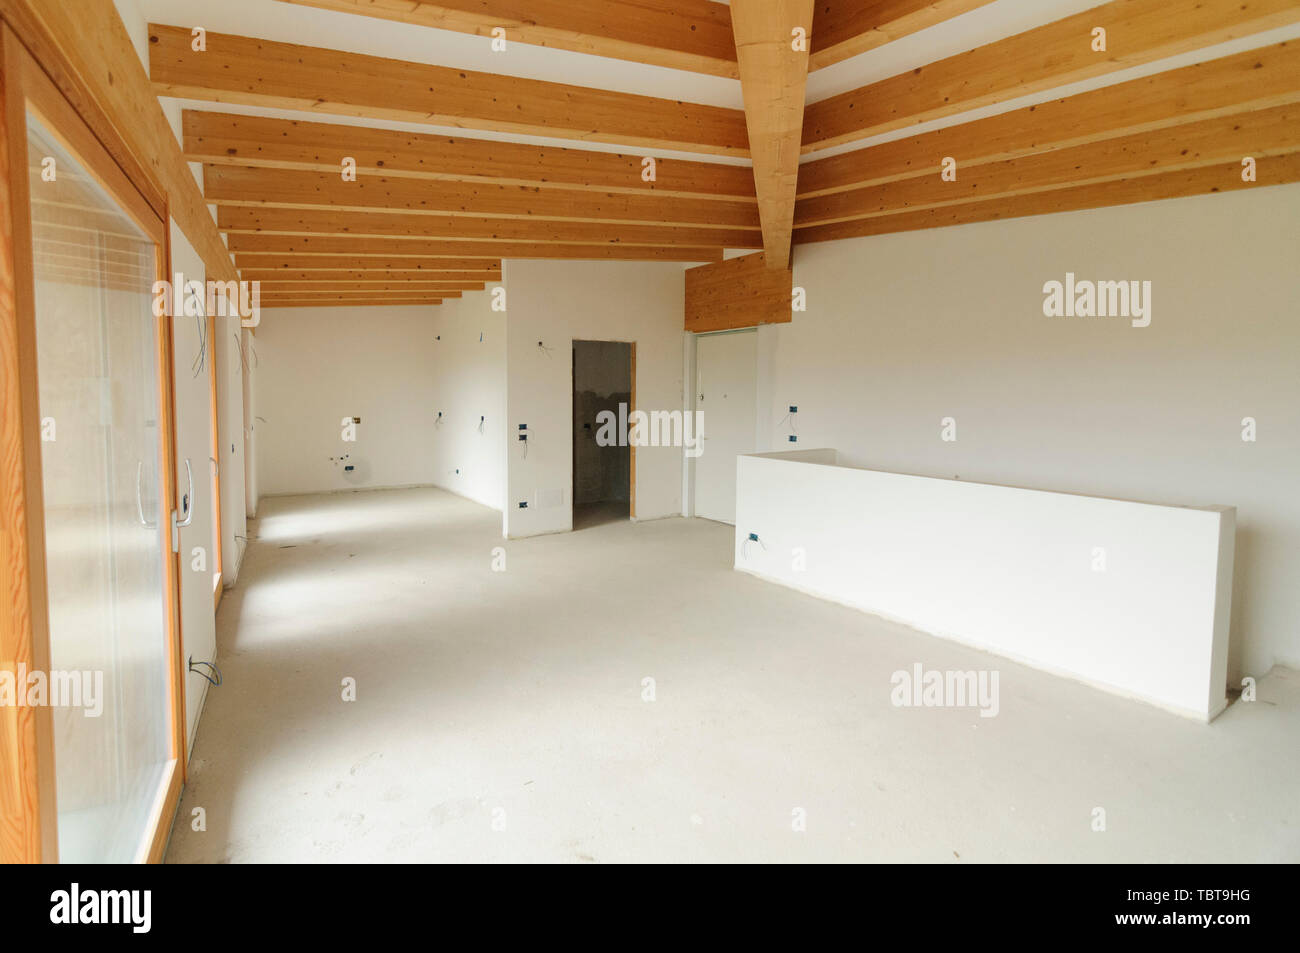 Bau oder Renovierung im Gange: Leere offenen Raum mit großen Fenstern und Holzbalken Stockfoto